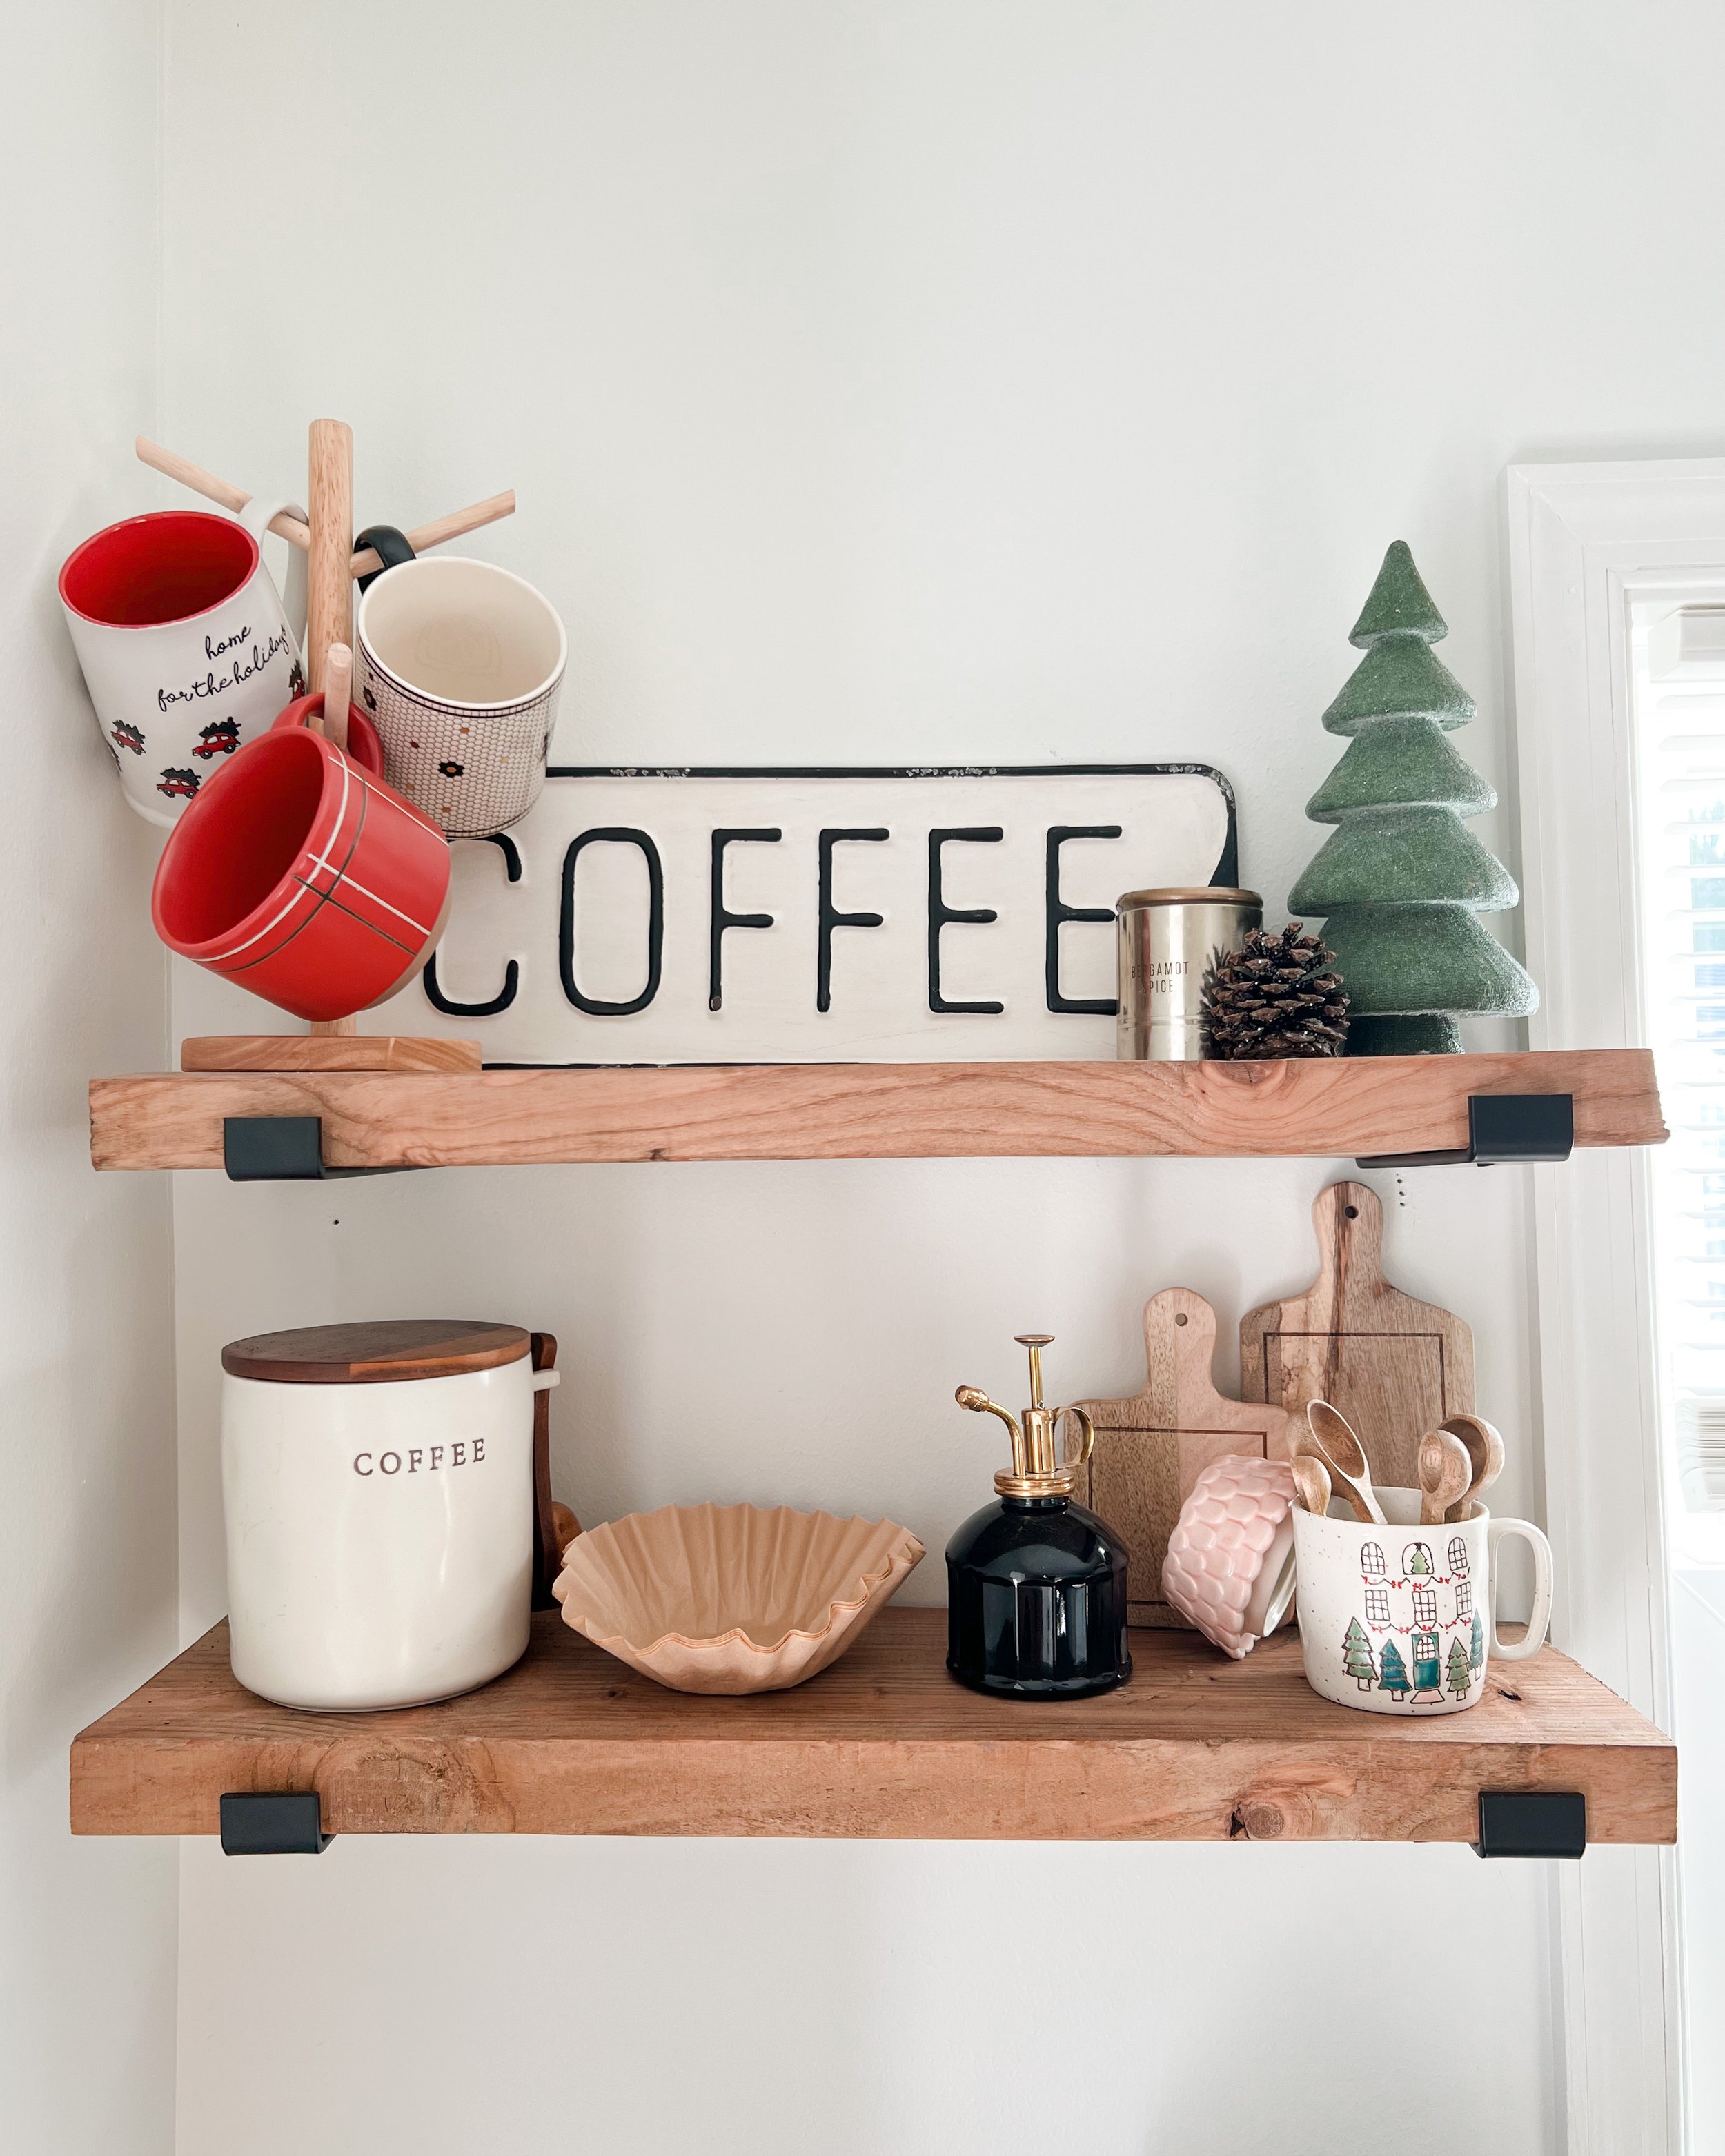 5 Home Coffee Bar Ideas